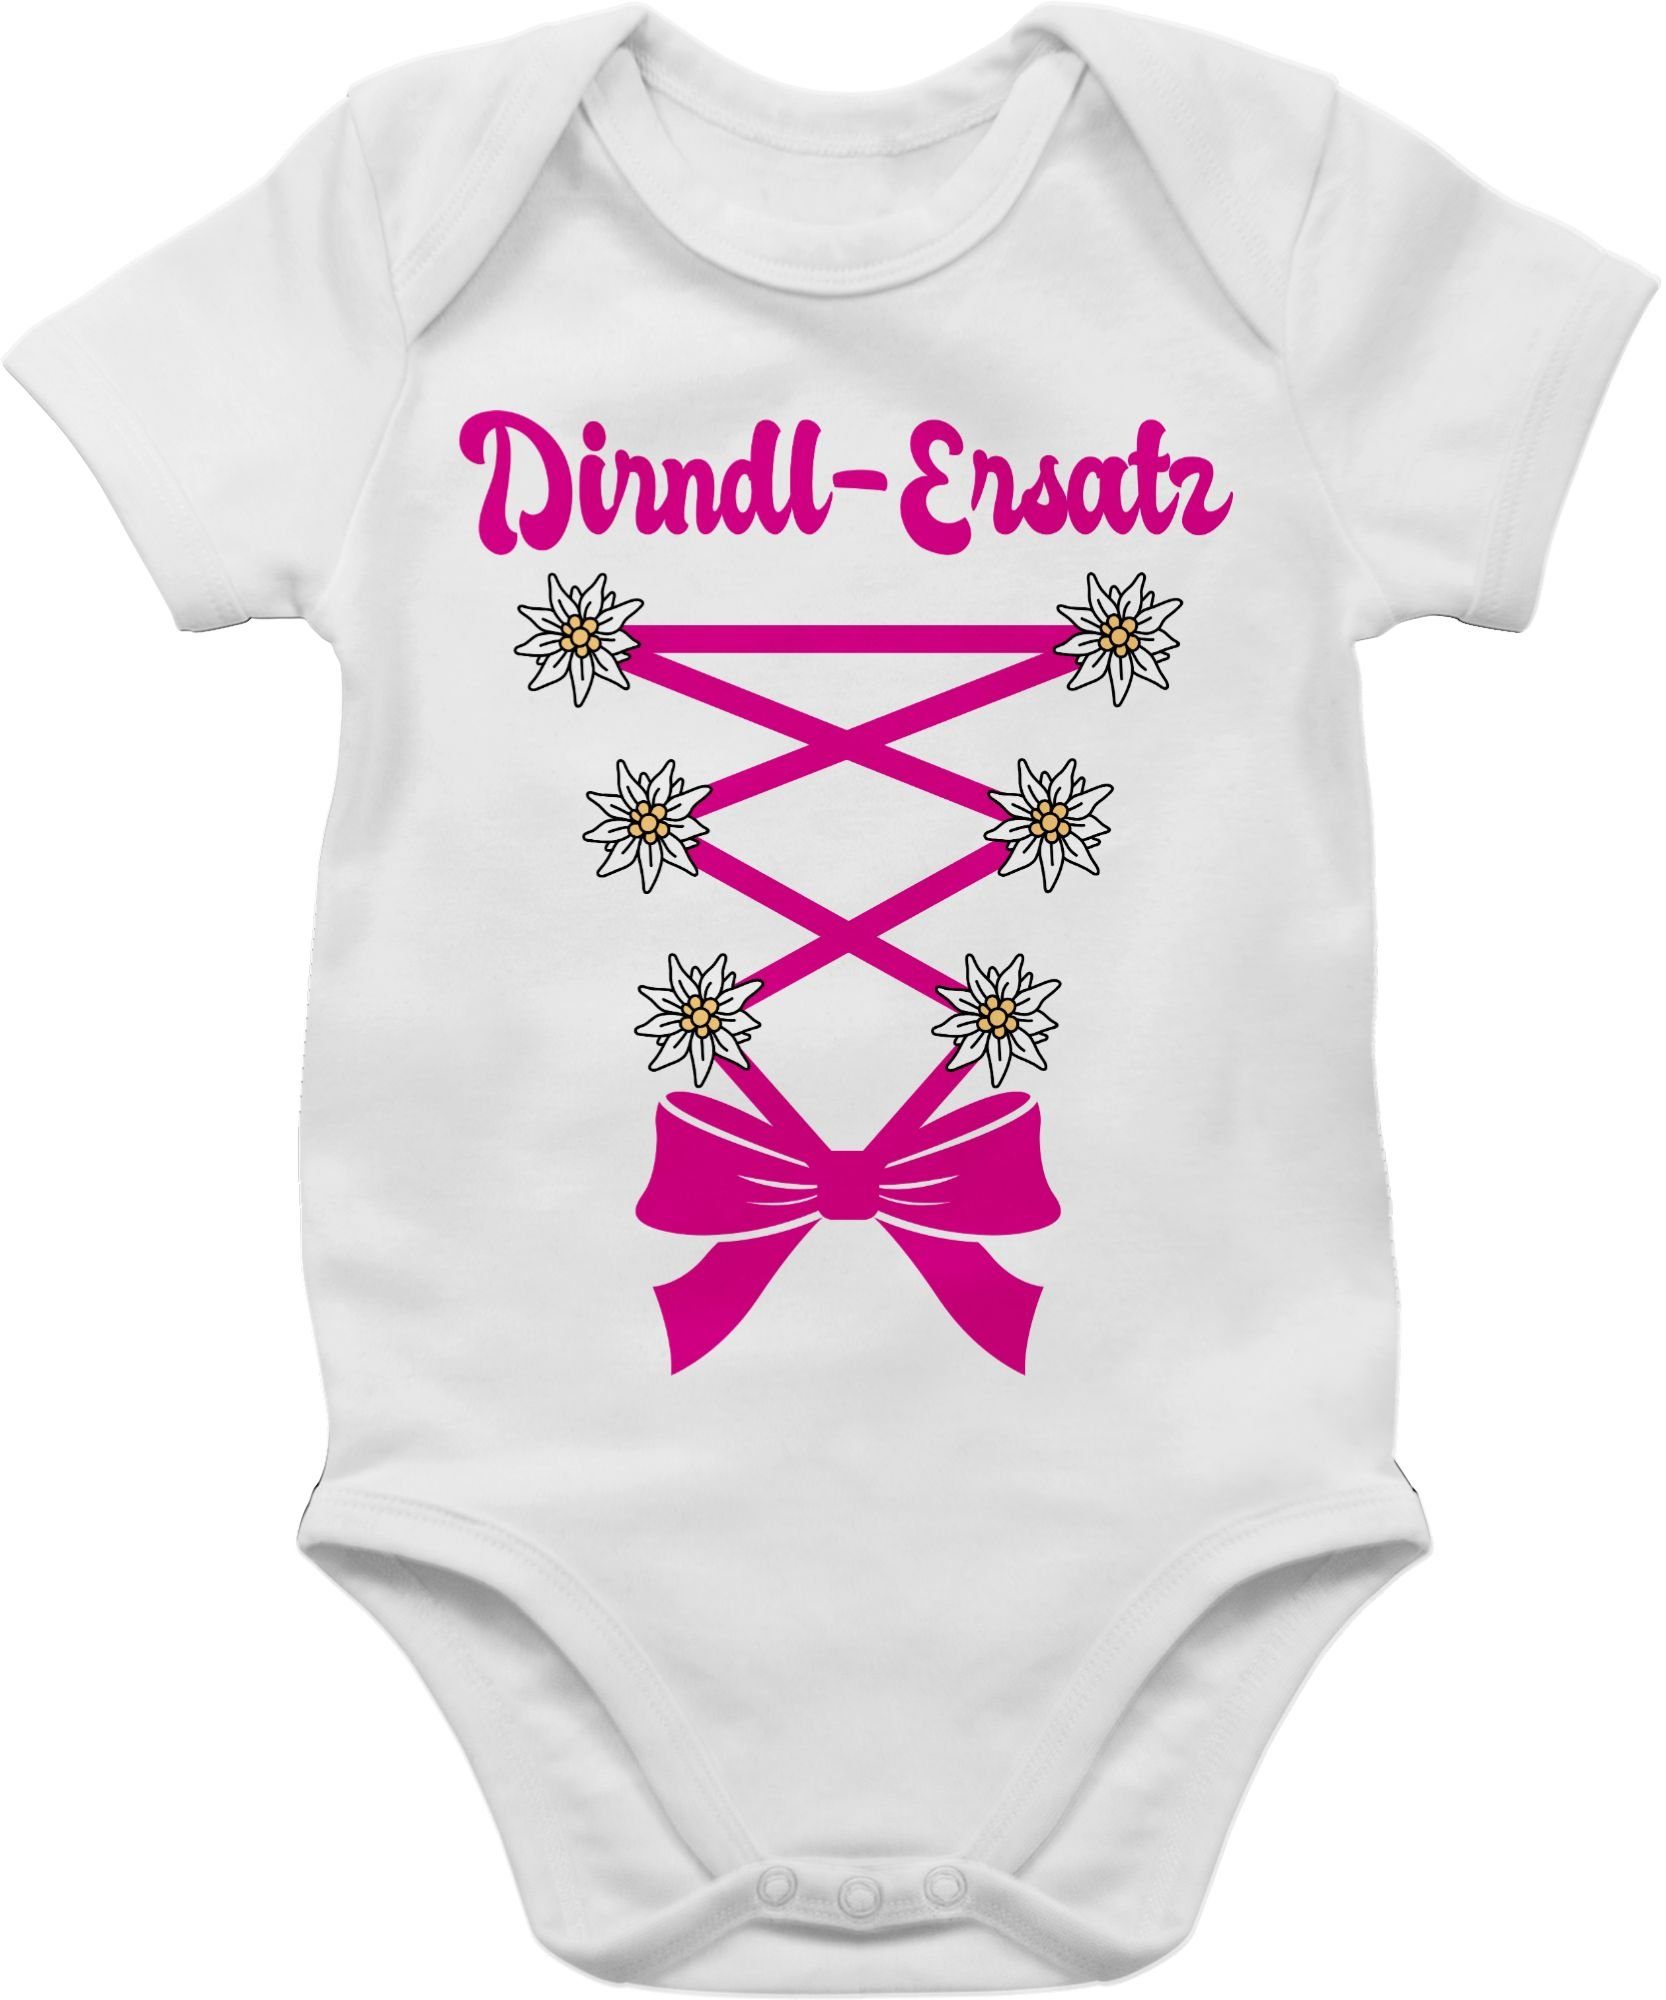 Shirtracer Shirtbody Dirndl-Ersatz Korsage - fuchsia - Mode für Oktoberfest  Baby Outfit - Baby Body Kurzarm baby body dirndl - tracht strampler -  lustige babystrampler - bz10